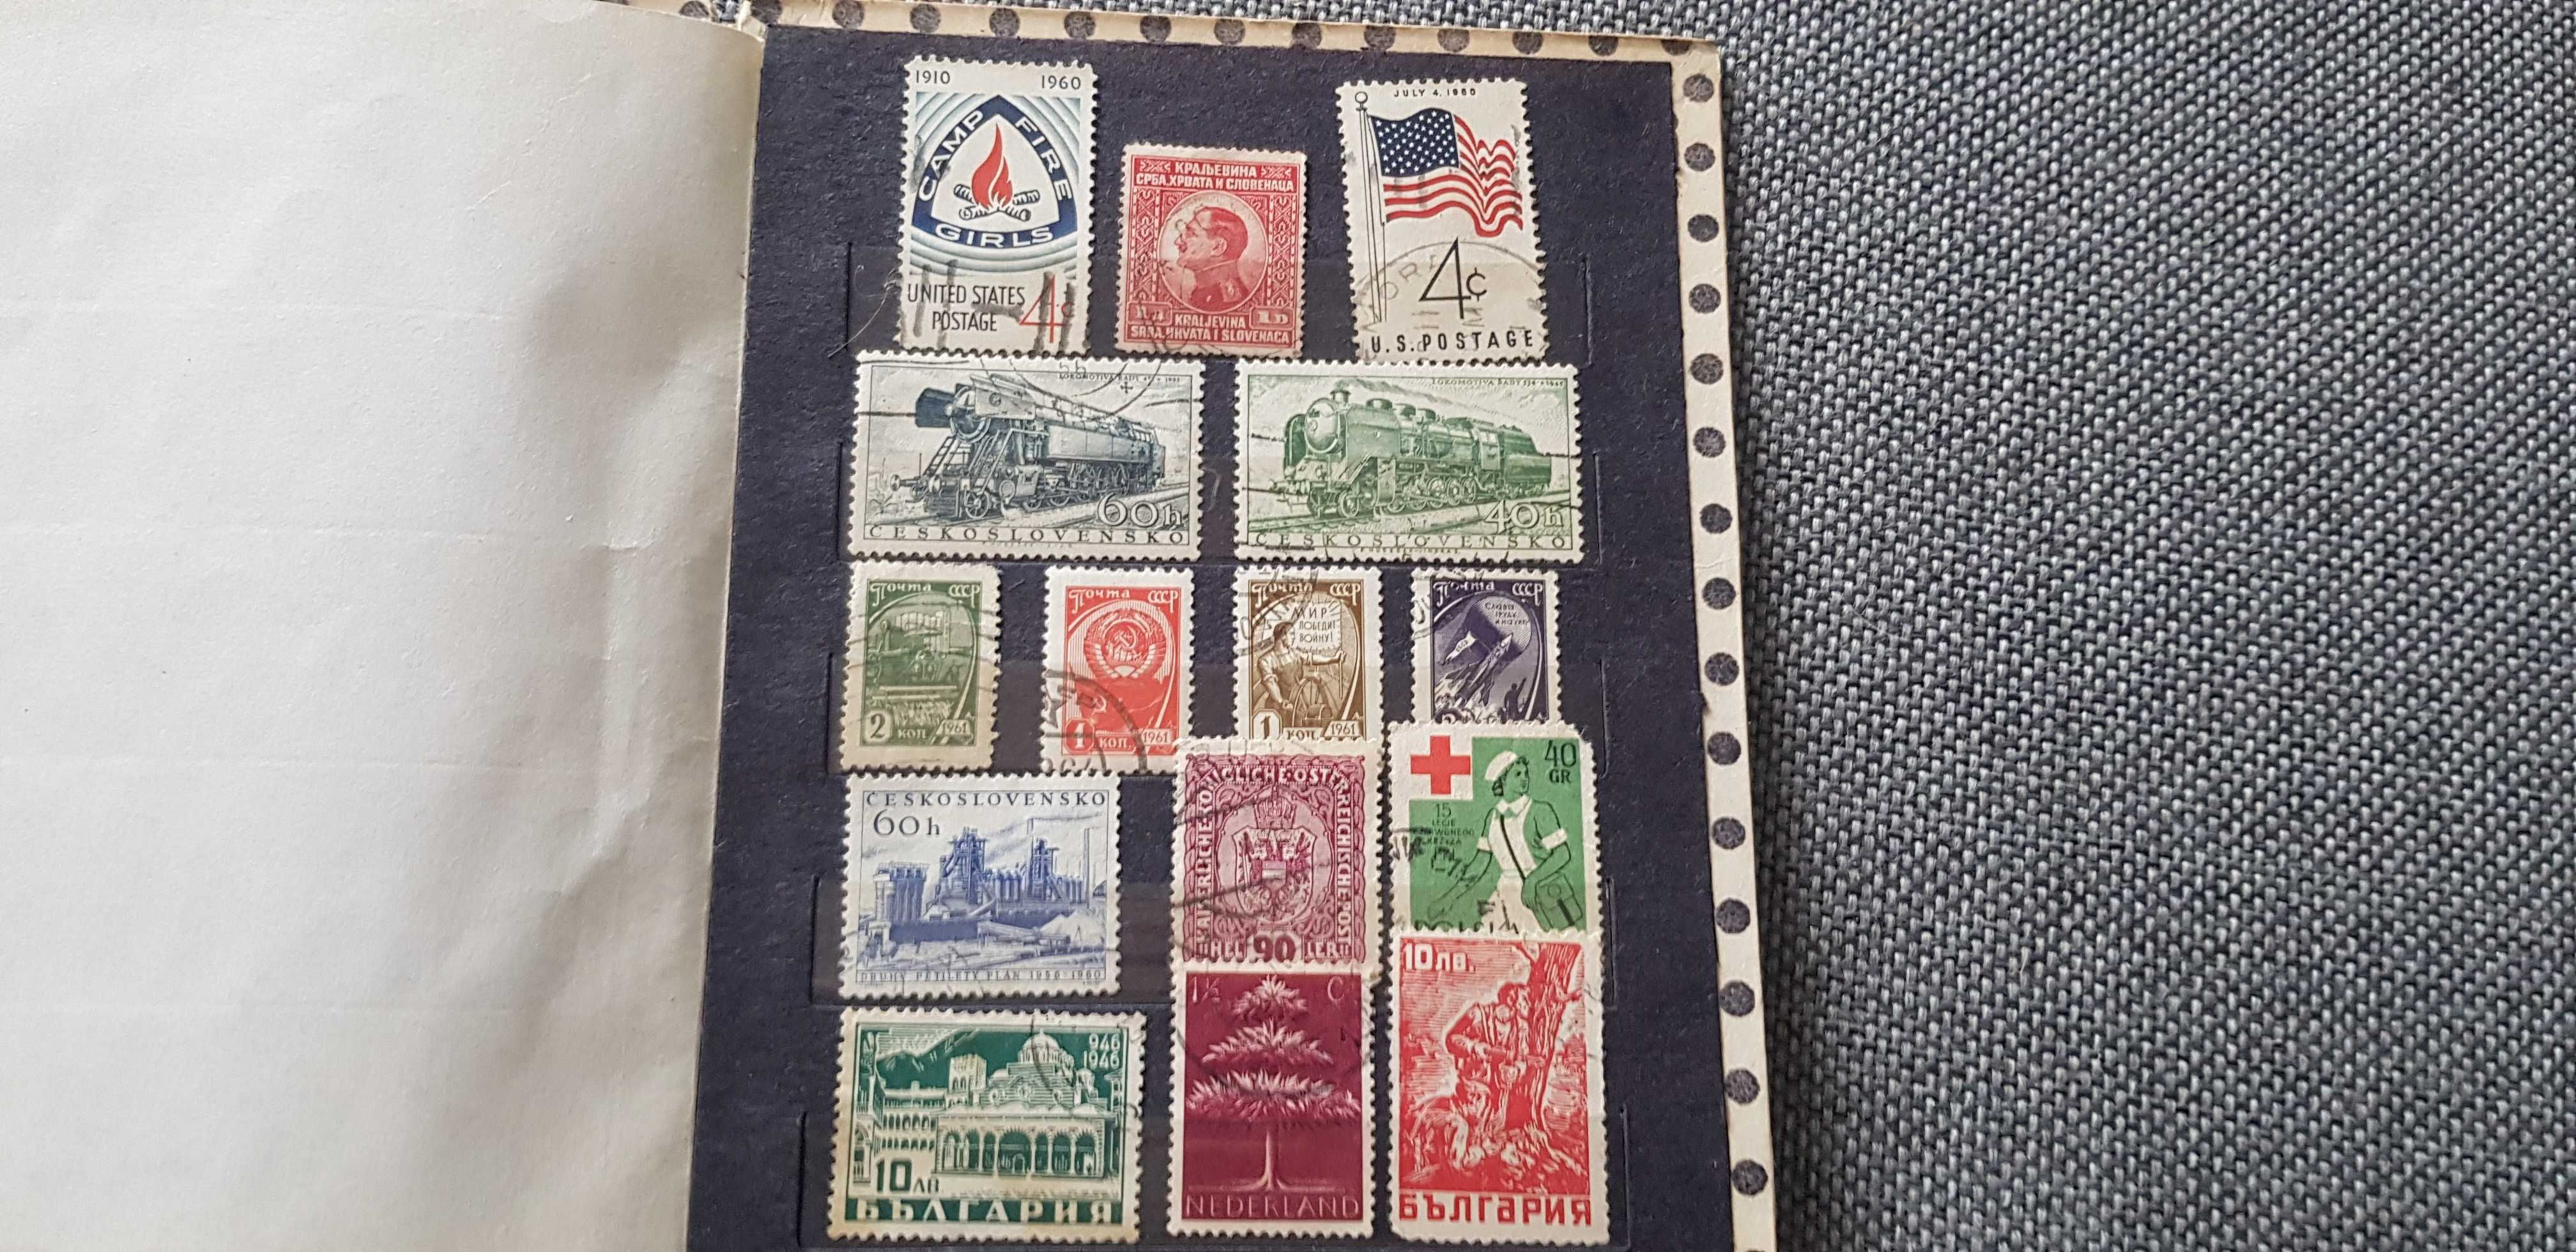 Stare znaczki polecam